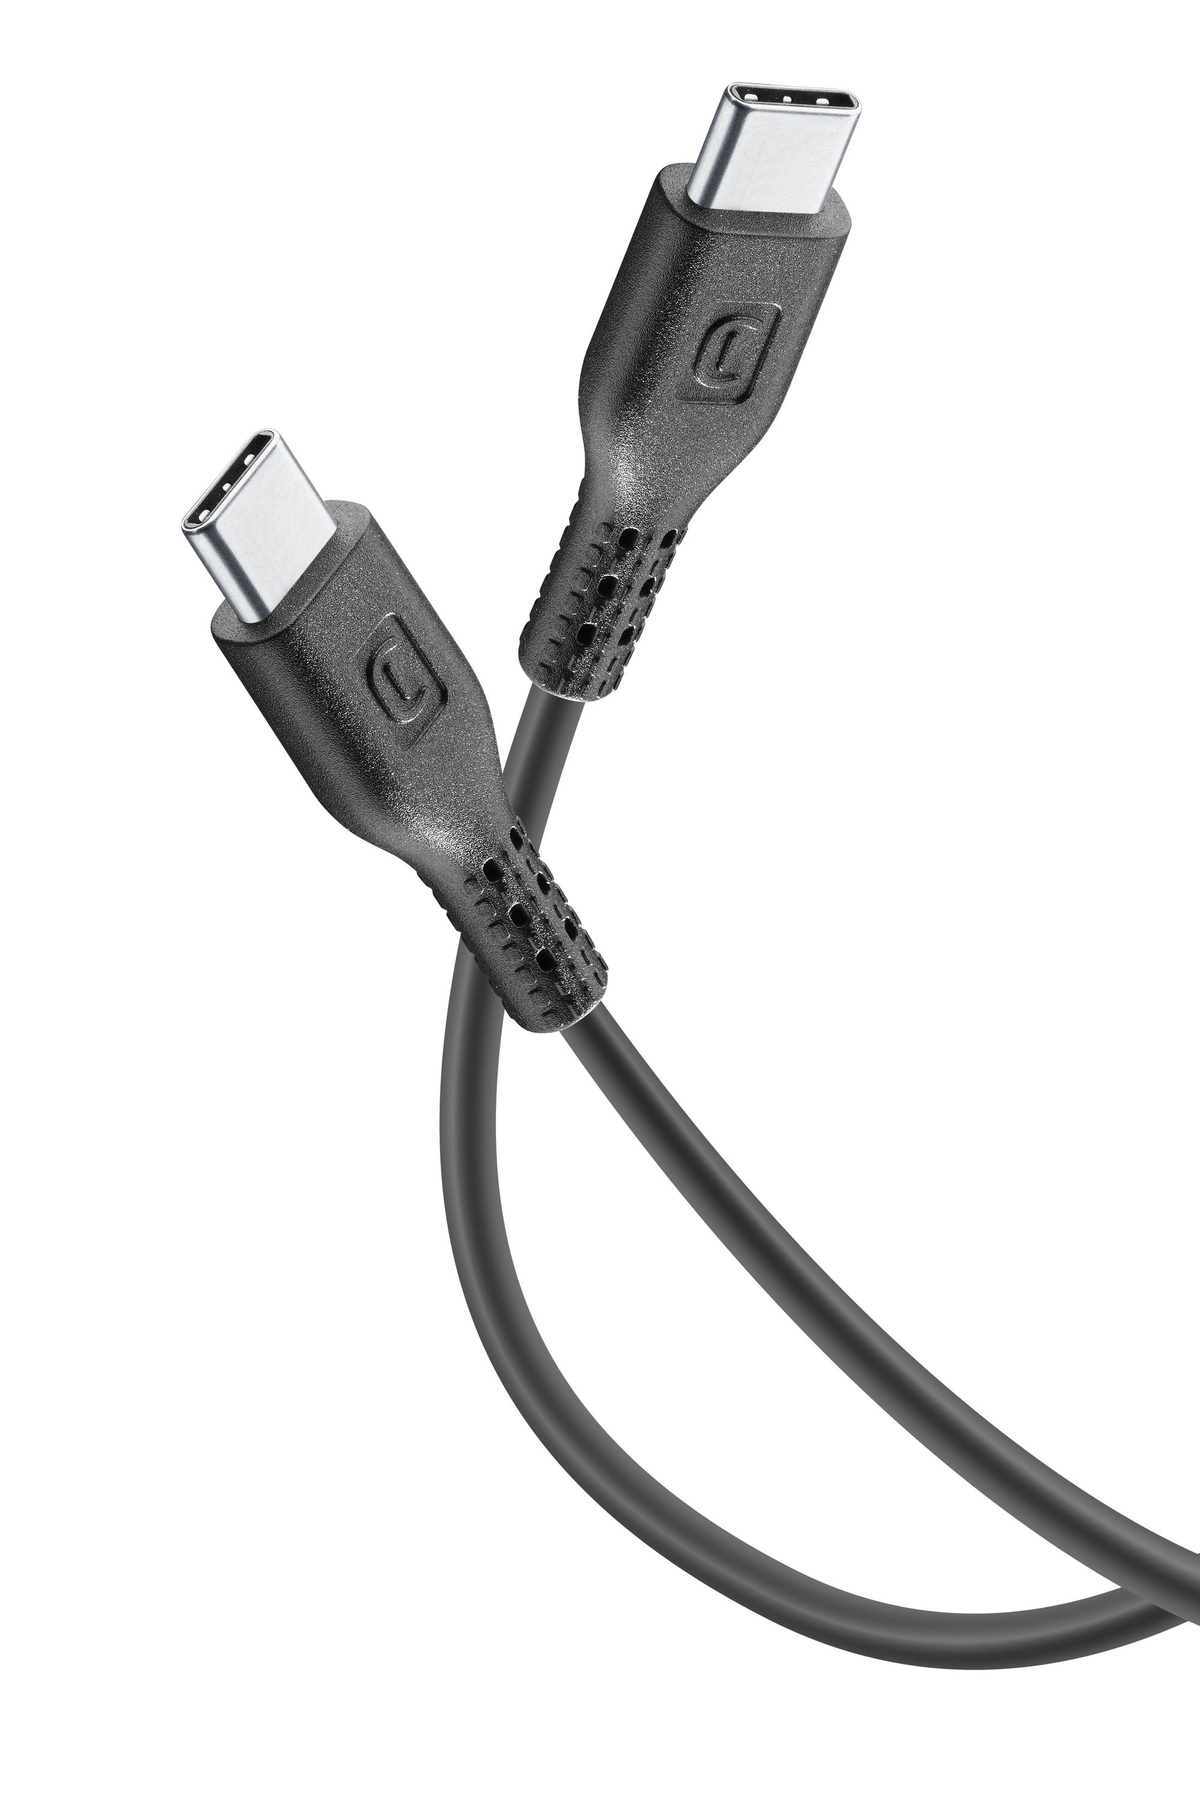 CELLULAR LINE USBDATAC2C5A1MK, Ladekabel, cm, 120 Weiß